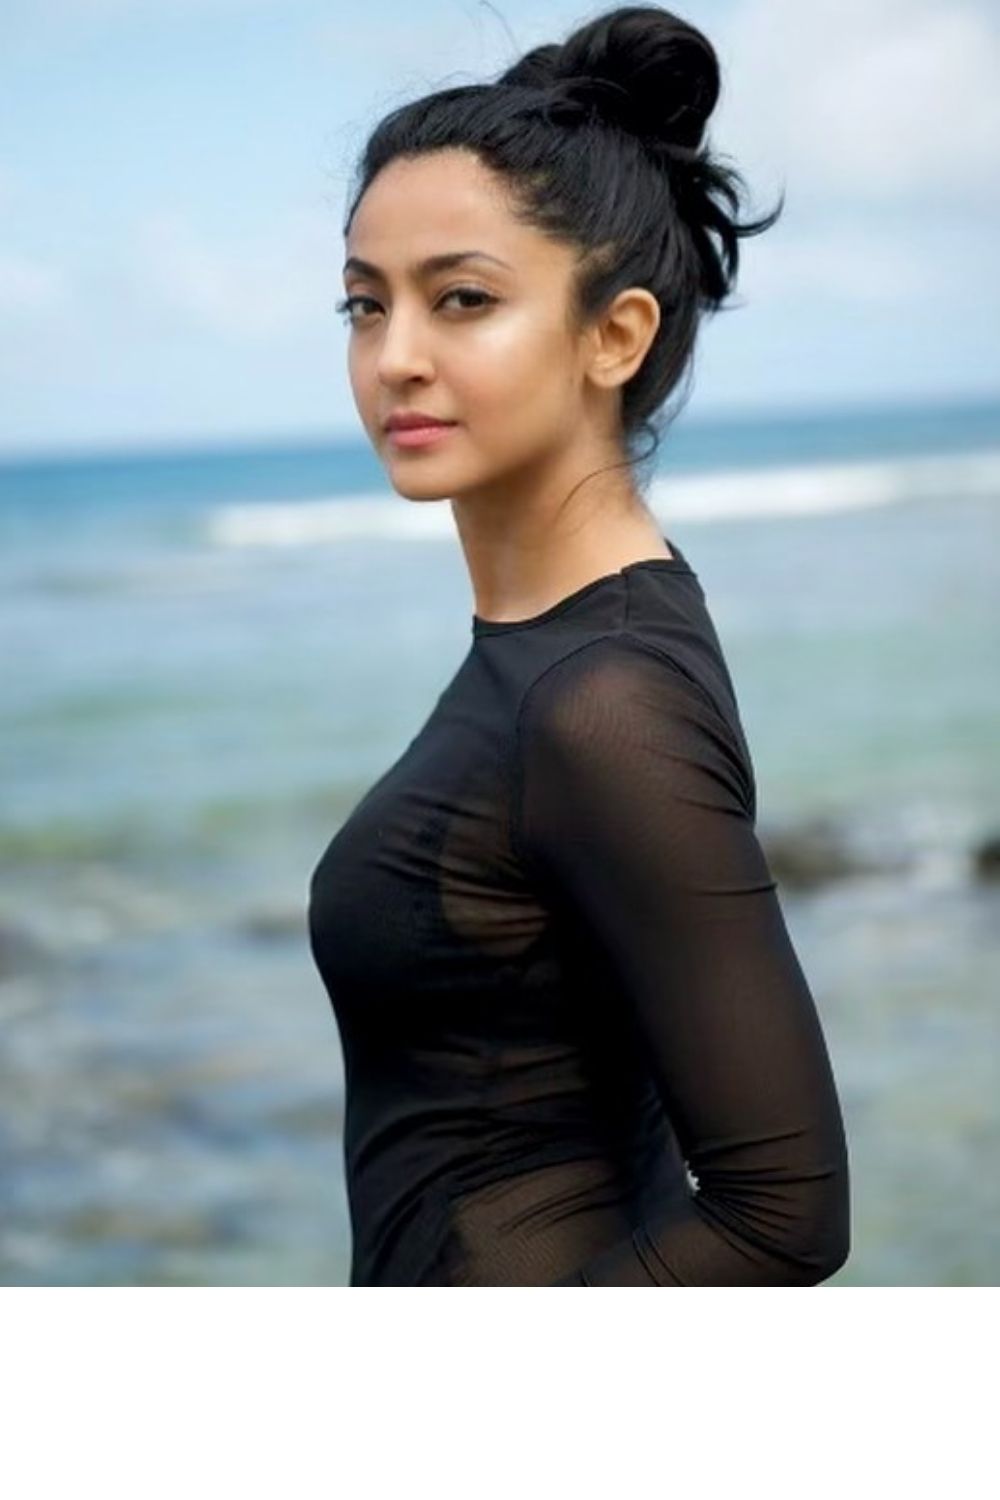 kannada actress new